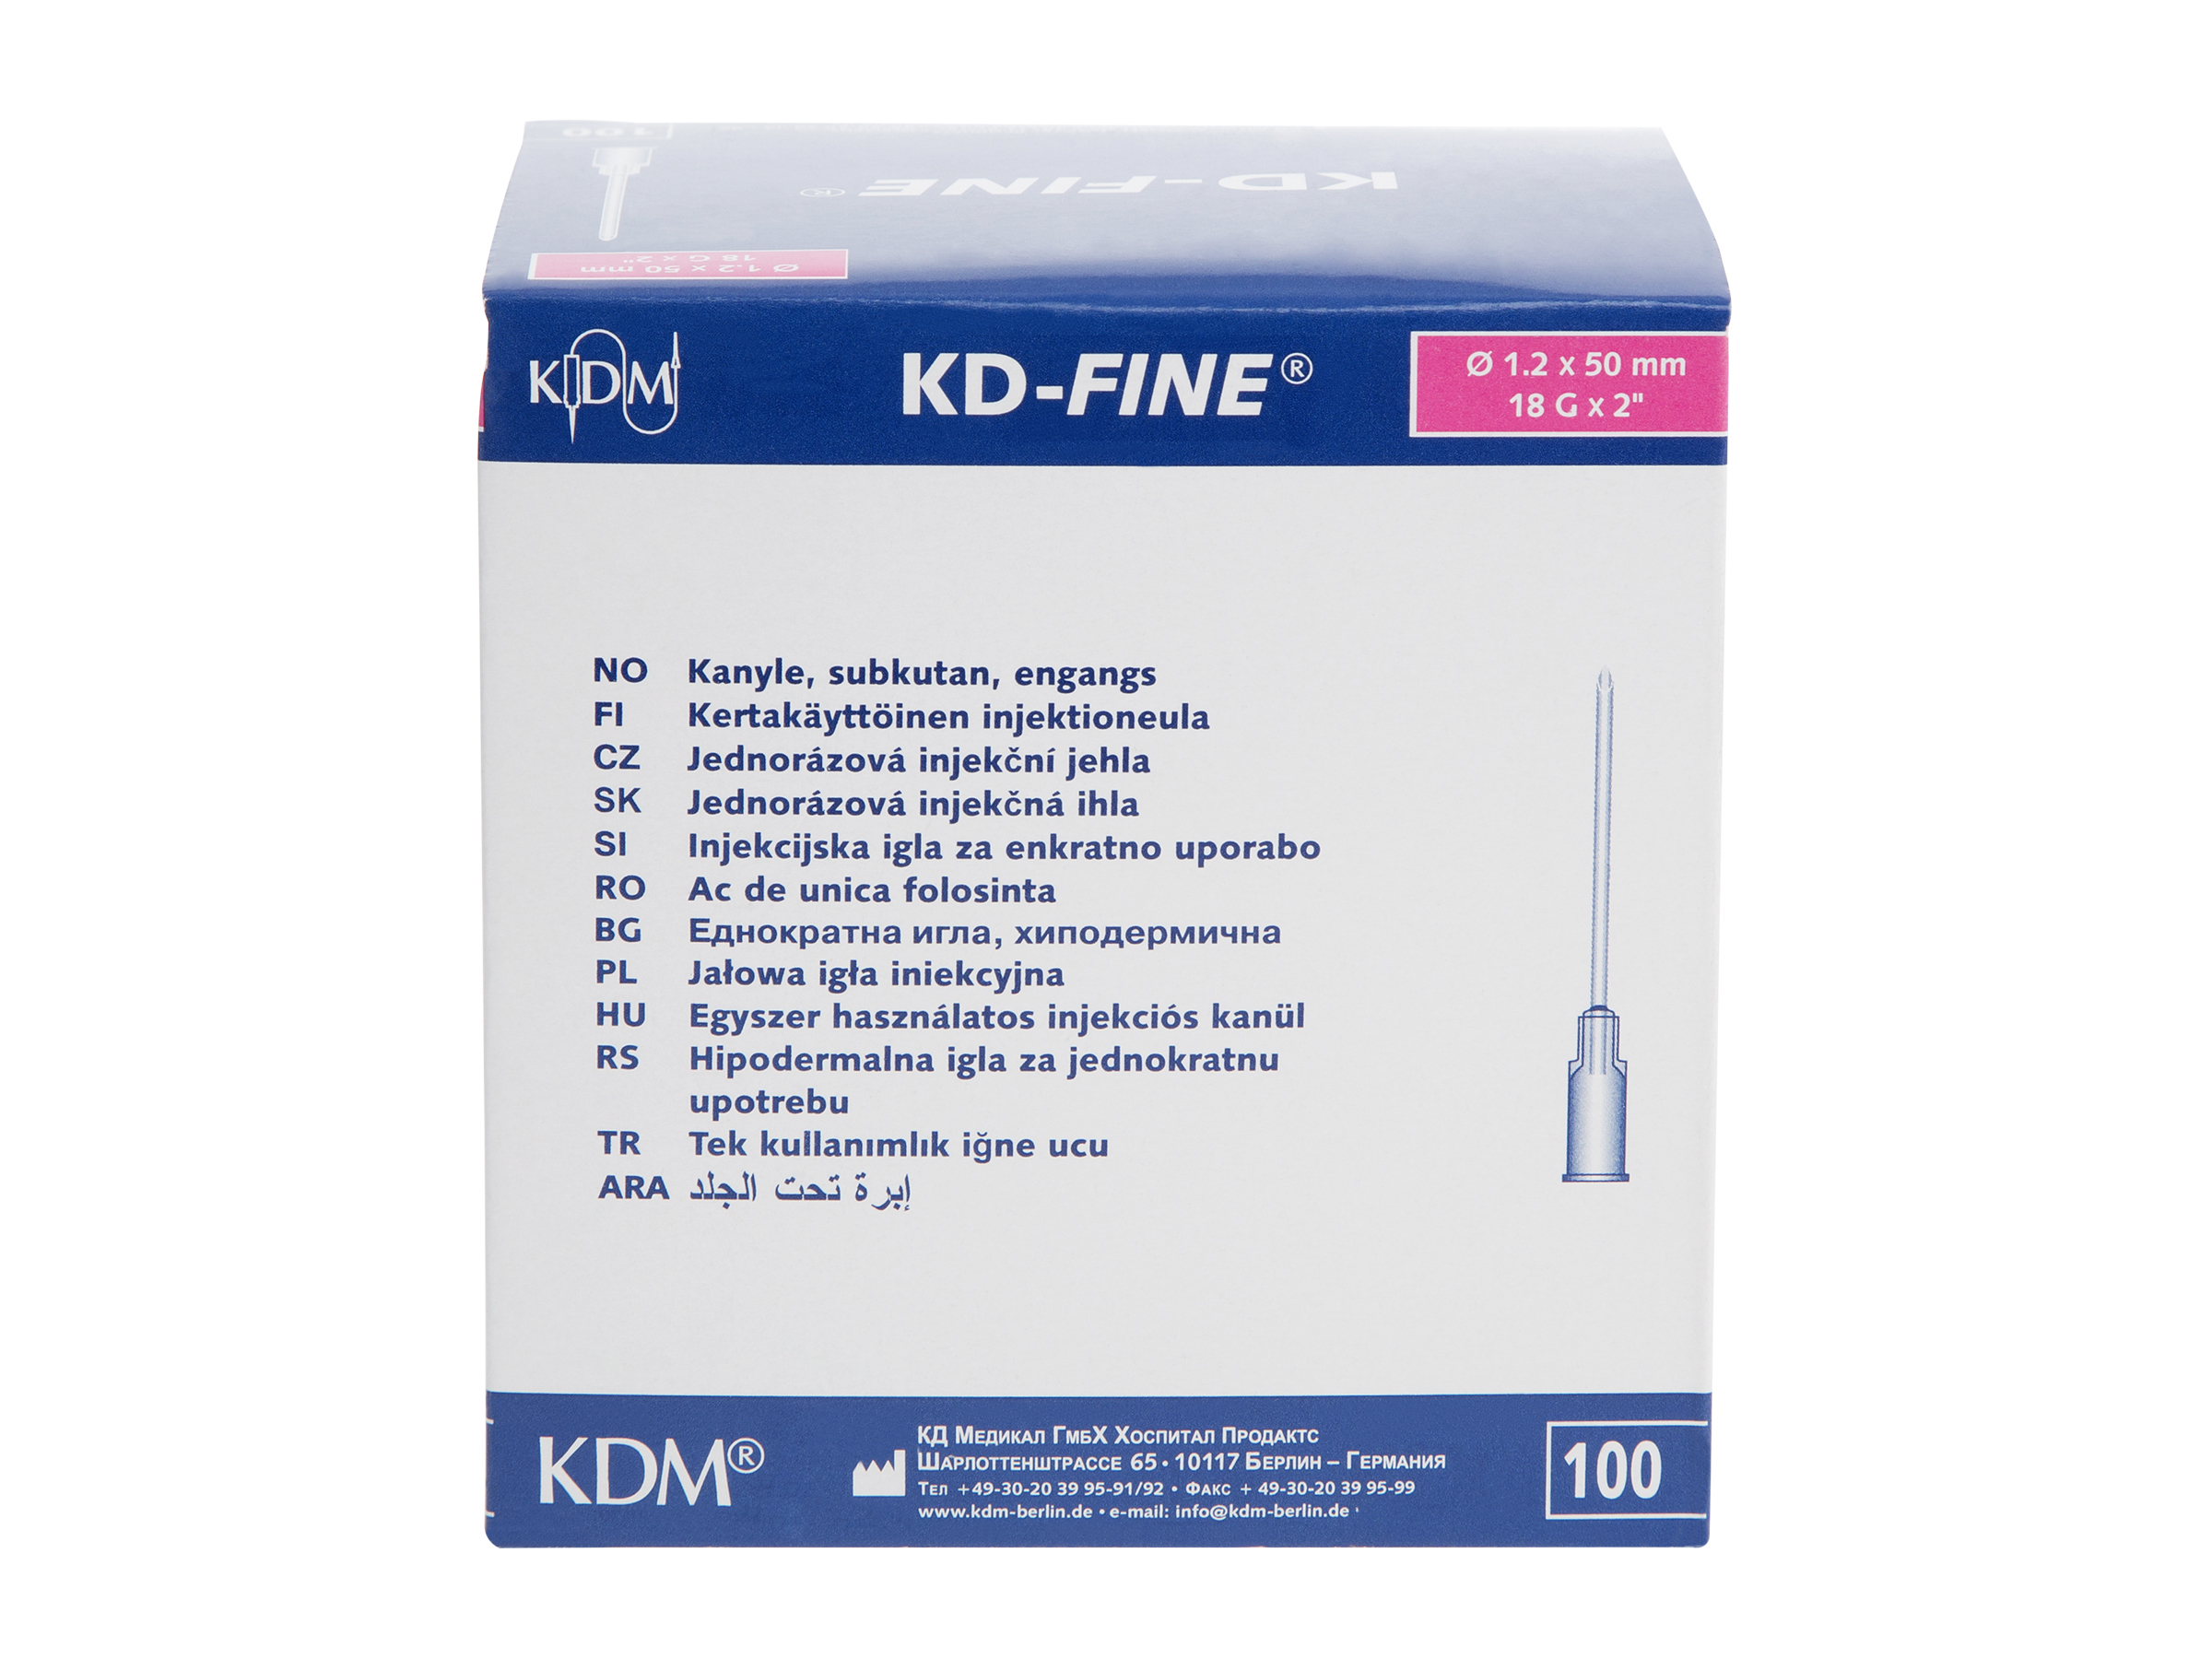 OneMed KDM KD-fine kanyler til injeksjon, 1,2x50mm, 18G X 2", rosa,100 stk.